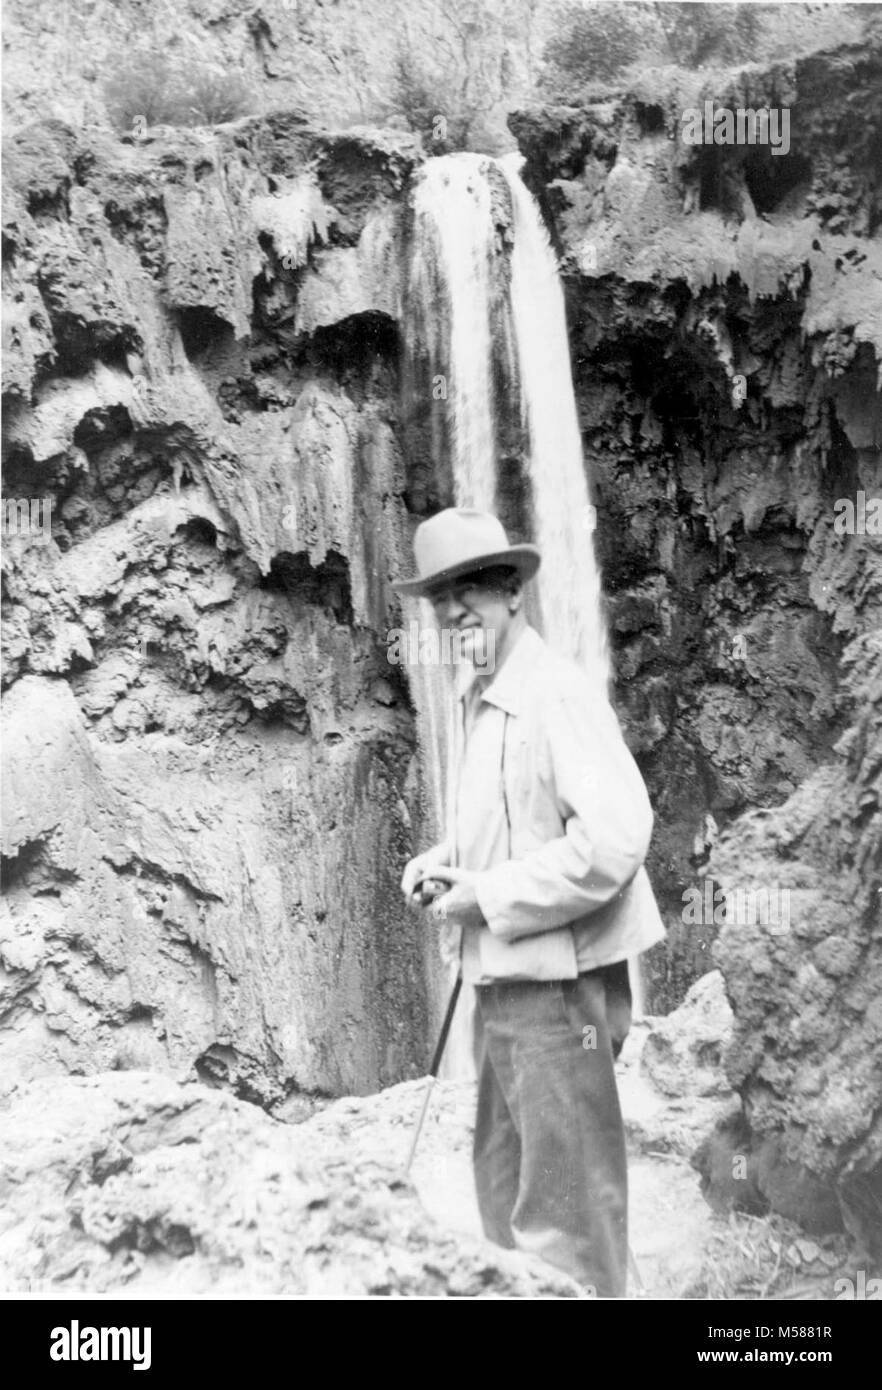 Historique du Grand Canyon. ATCHISON, TOPEKA AND SANTA FE RAILWAY PRÉSIDENT FRED GURLEY HAVASUPAI VISITES AVEC BRYANT. Vers 1950. Banque D'Images